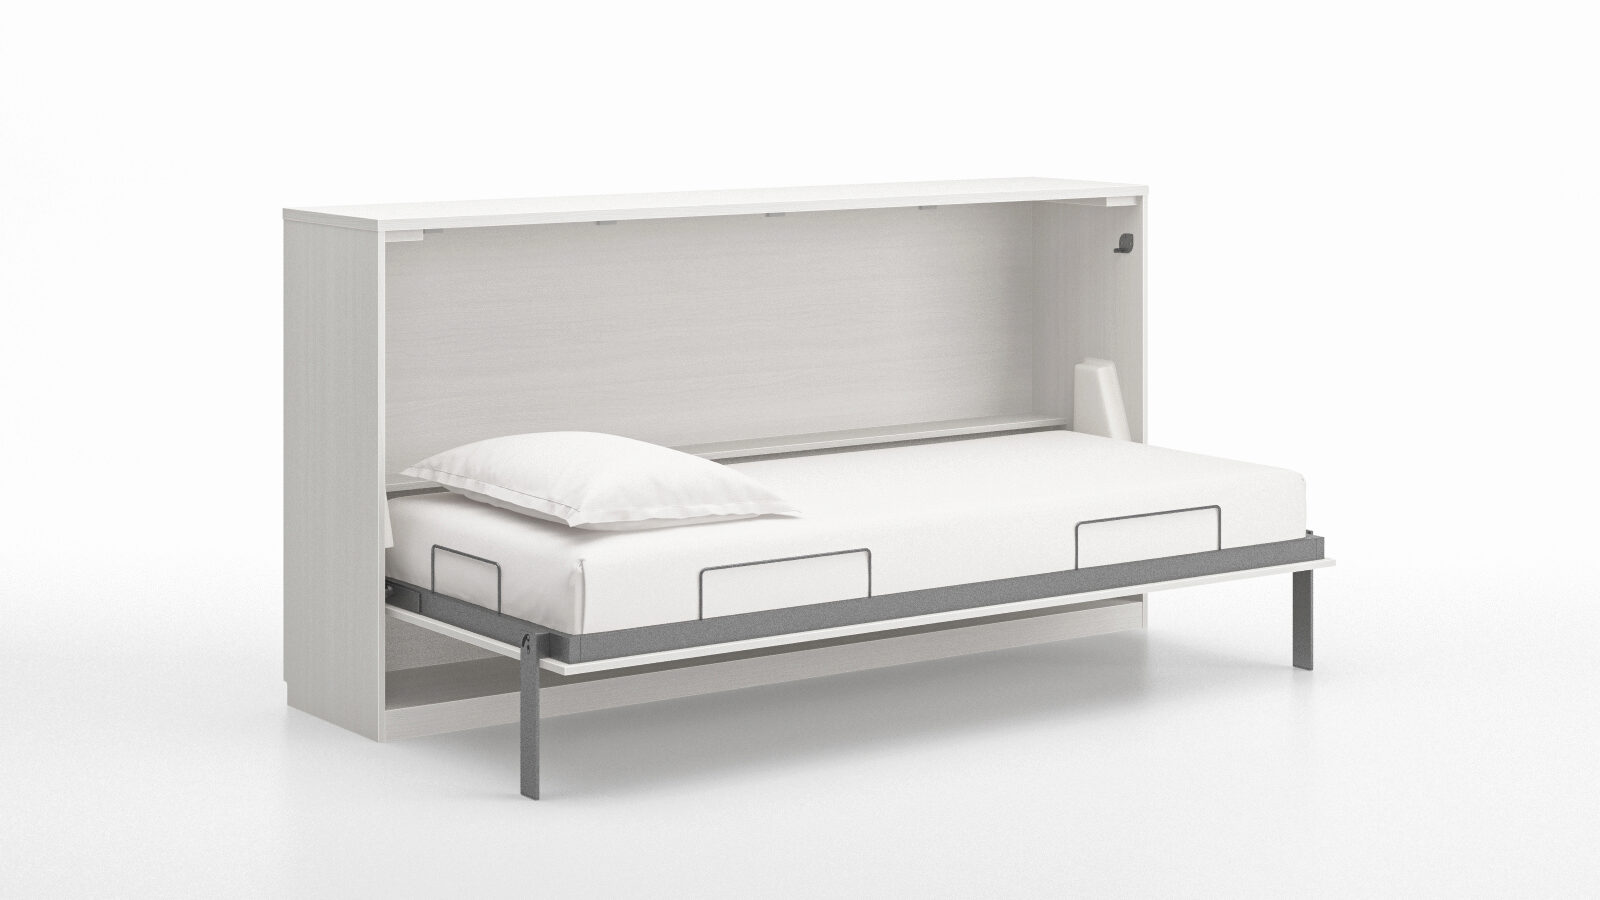 Кровать откидная горизонтальная Smart Comfort Extra, цвет Белый гольфы mediven comfort 1 кл компр co140 medi 3 карамель стандартная